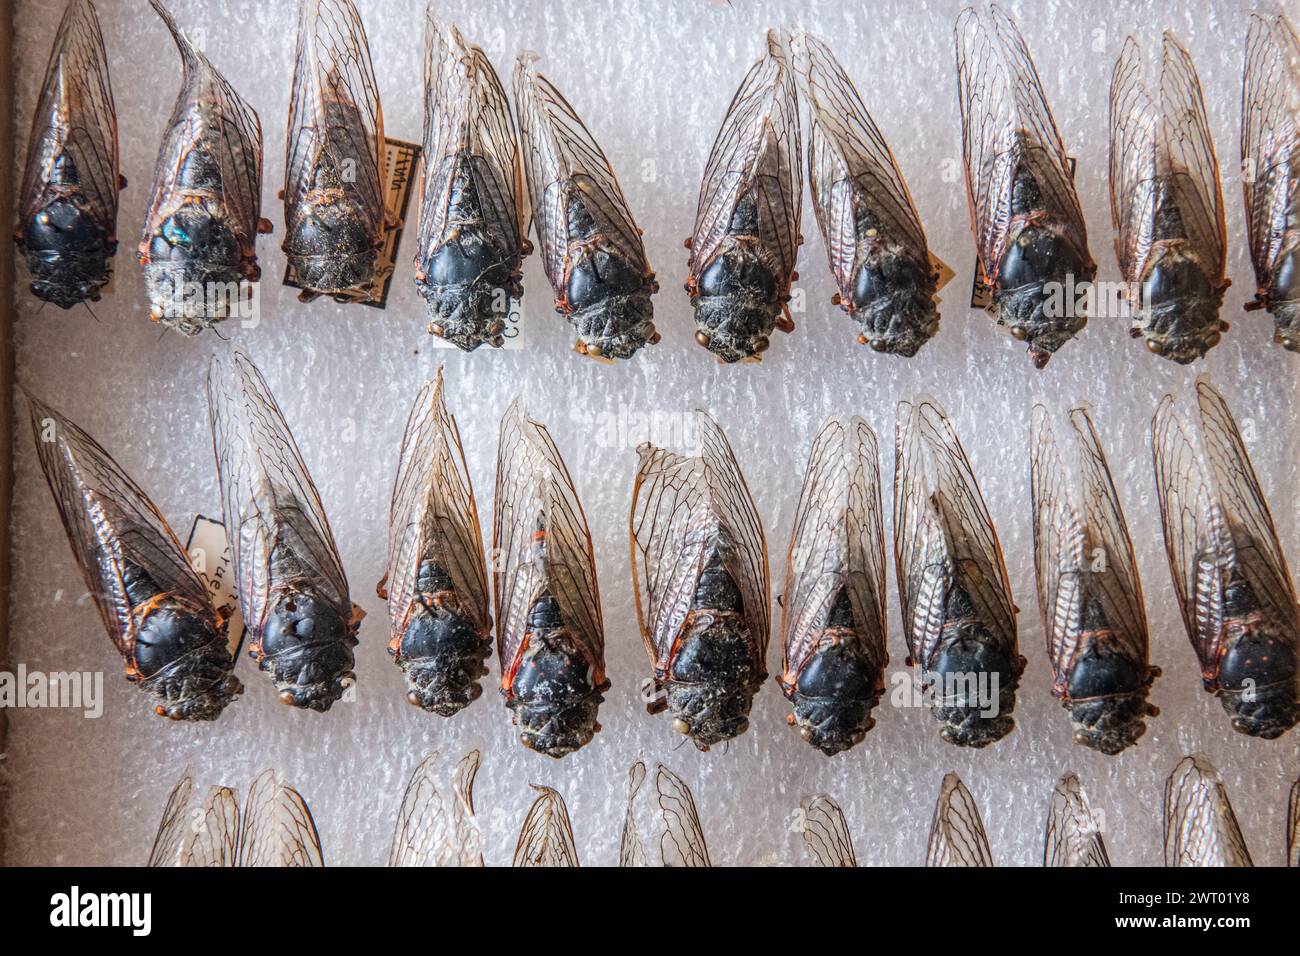 Viele gefiederte Zikaden in einem Museumskoffer zeigen die Vielfalt der Zikaden Nordamerikas. Stockfoto